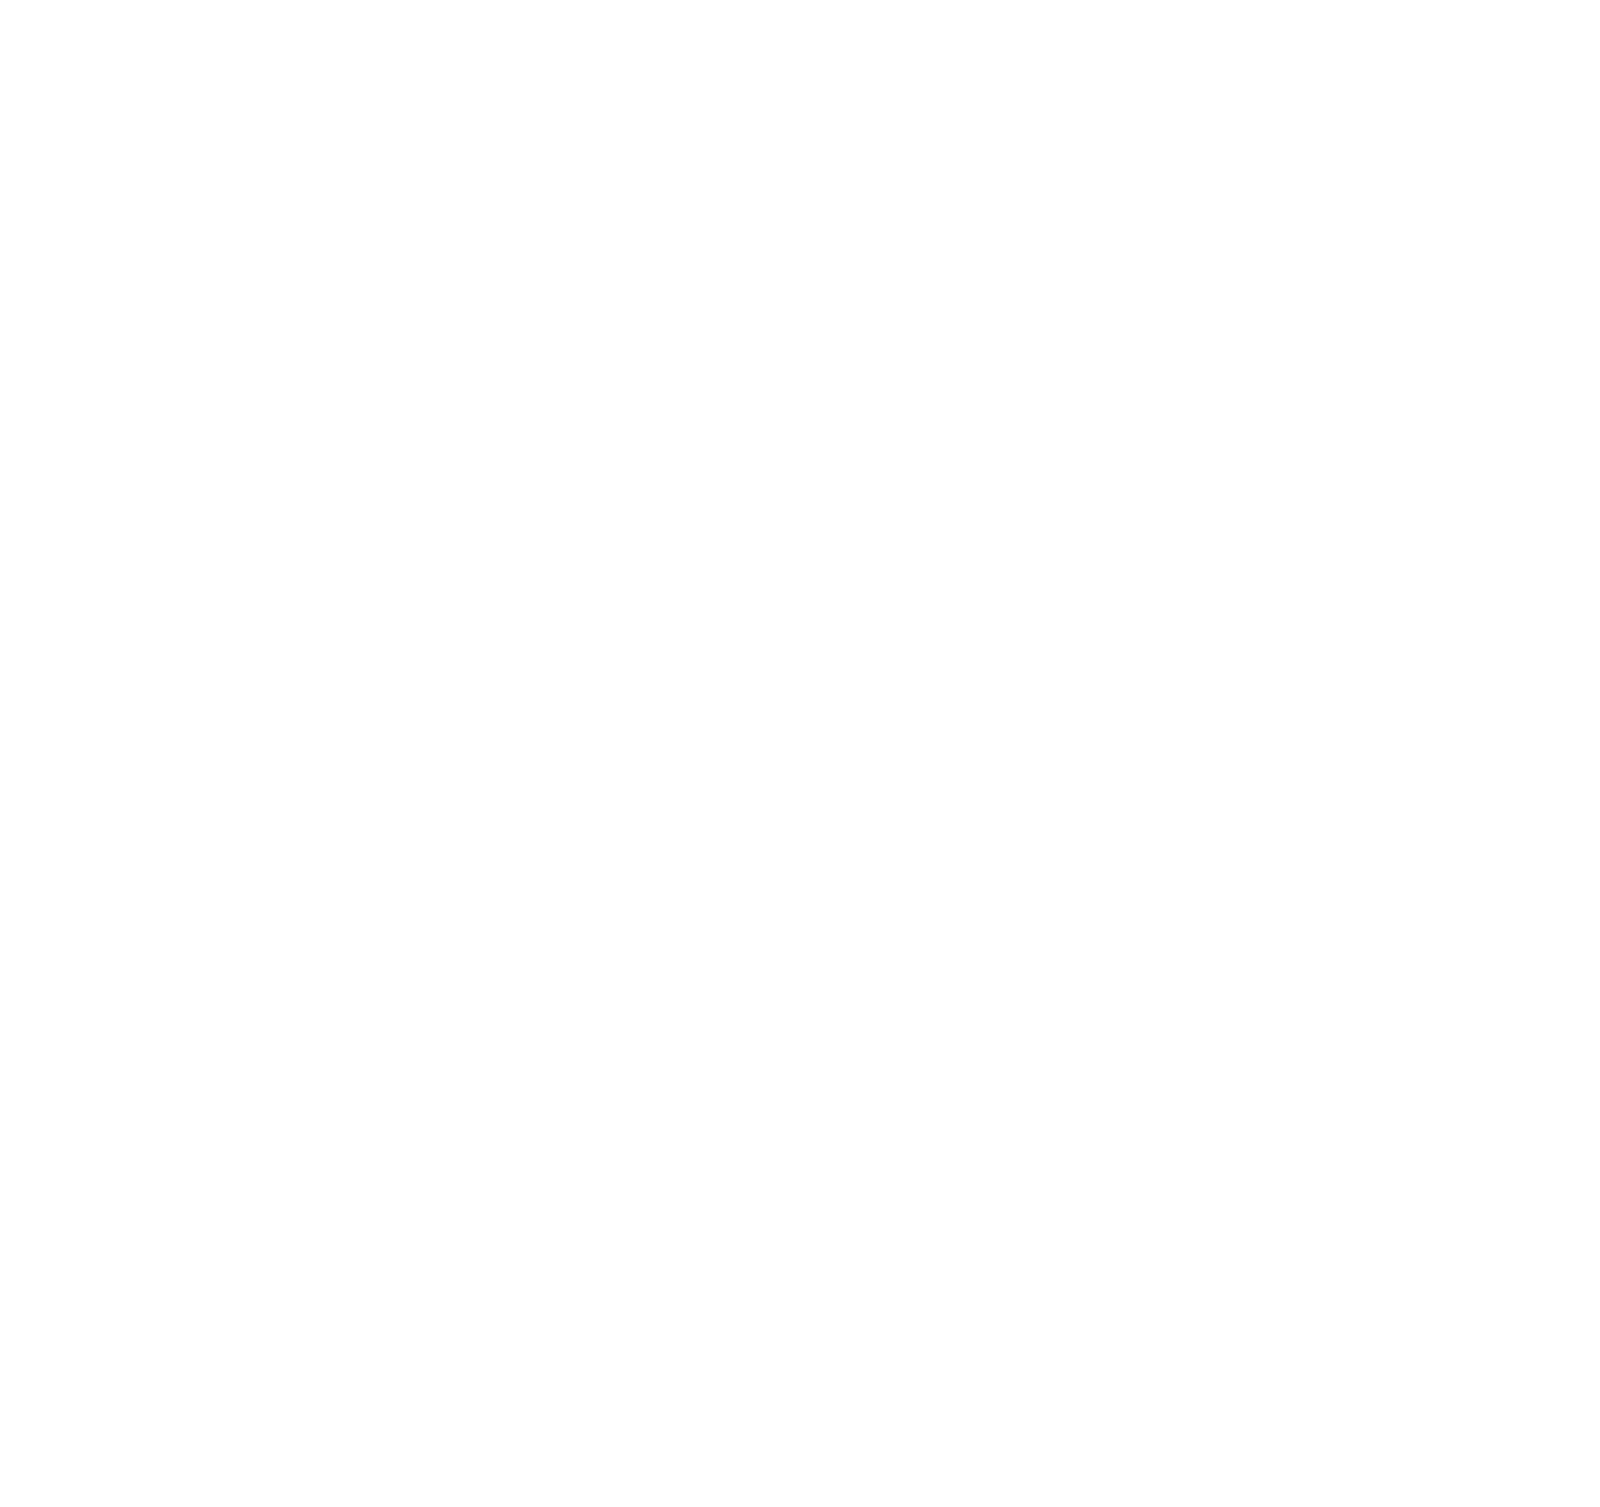 Fdp Foi De Propósito + Expansão Fdp 2 - Jogo De Cartas Buró